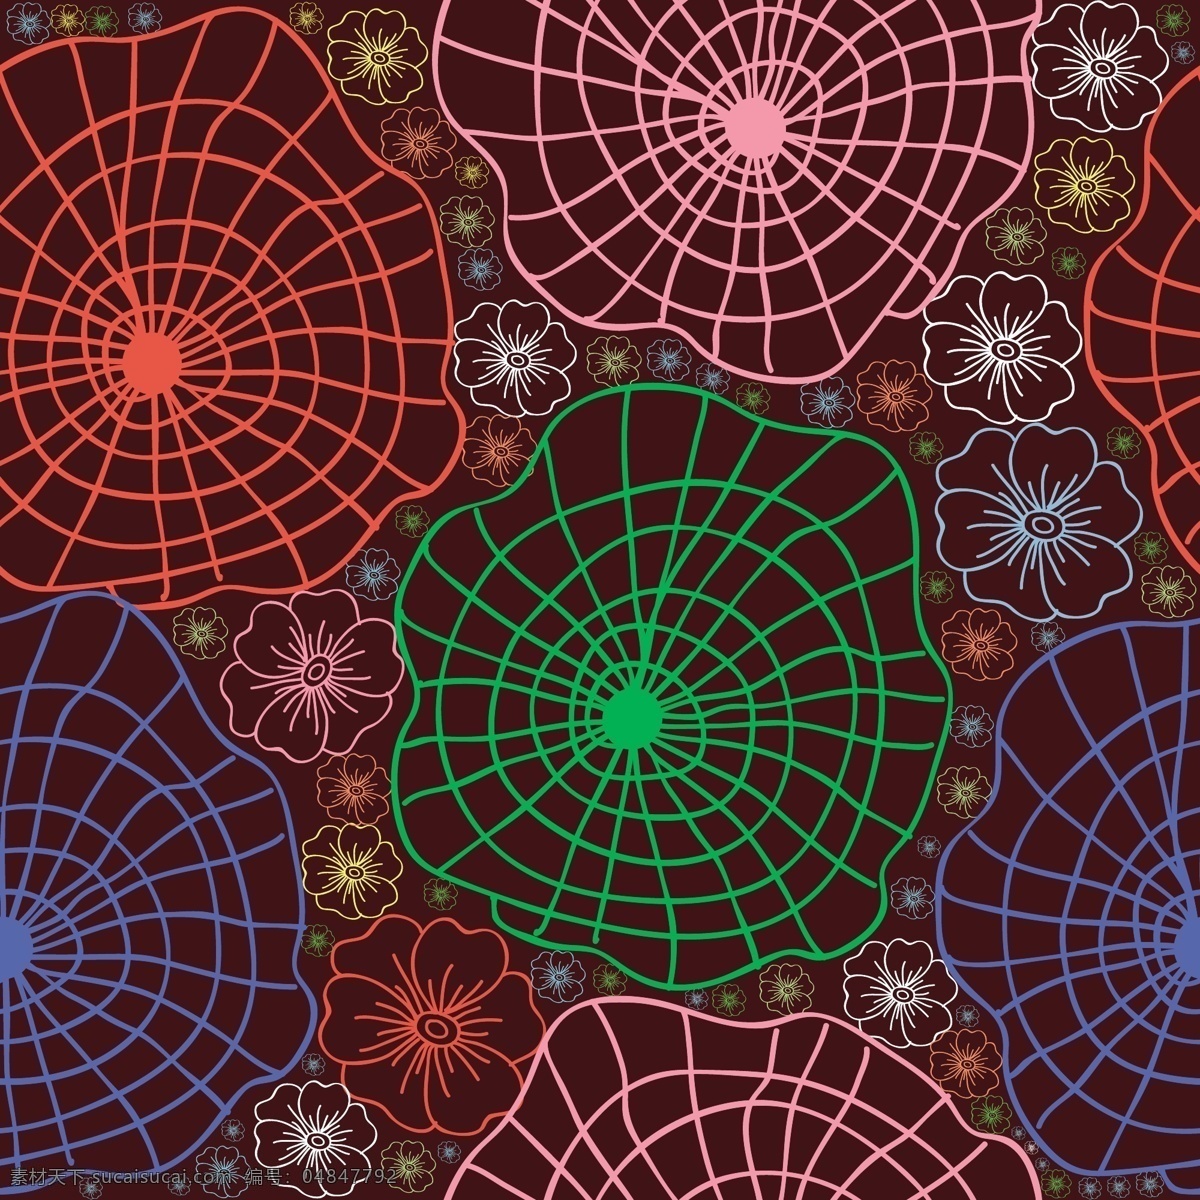 线性 蜘蛛网 背景 背景素材 花纹背景 创意背景 矢量背景 抽象背景 花卉花朵